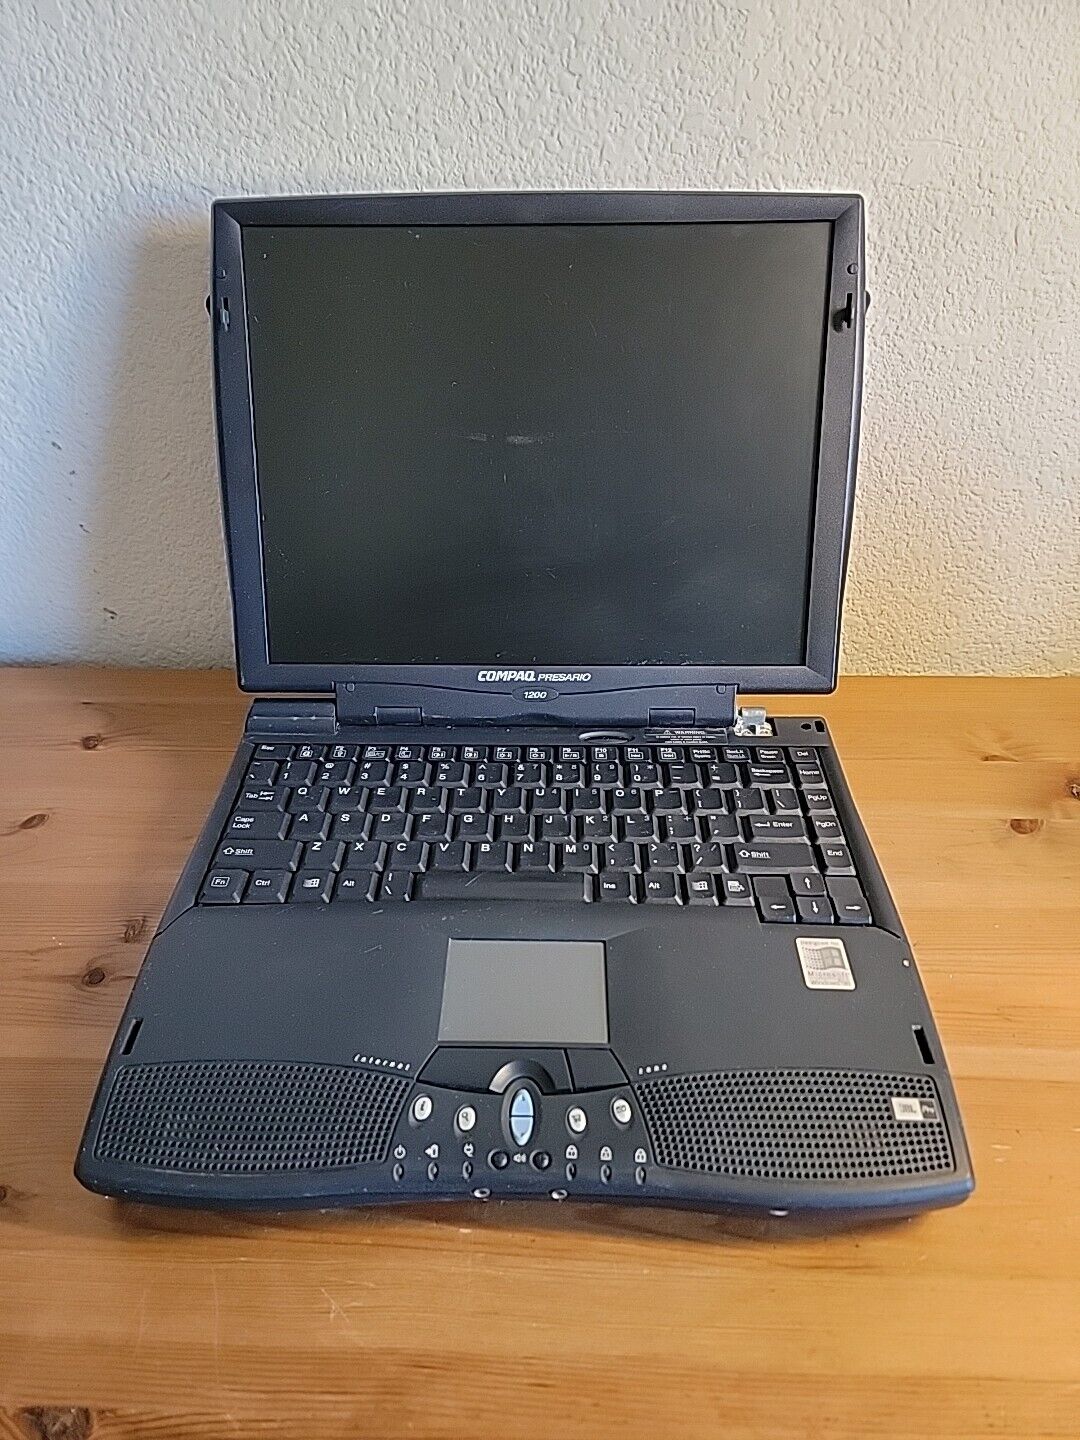 Vintage Compaq Presario 1200-XL118 CM2070 1456VQLIN Laptop Windows 98 UNTESTED